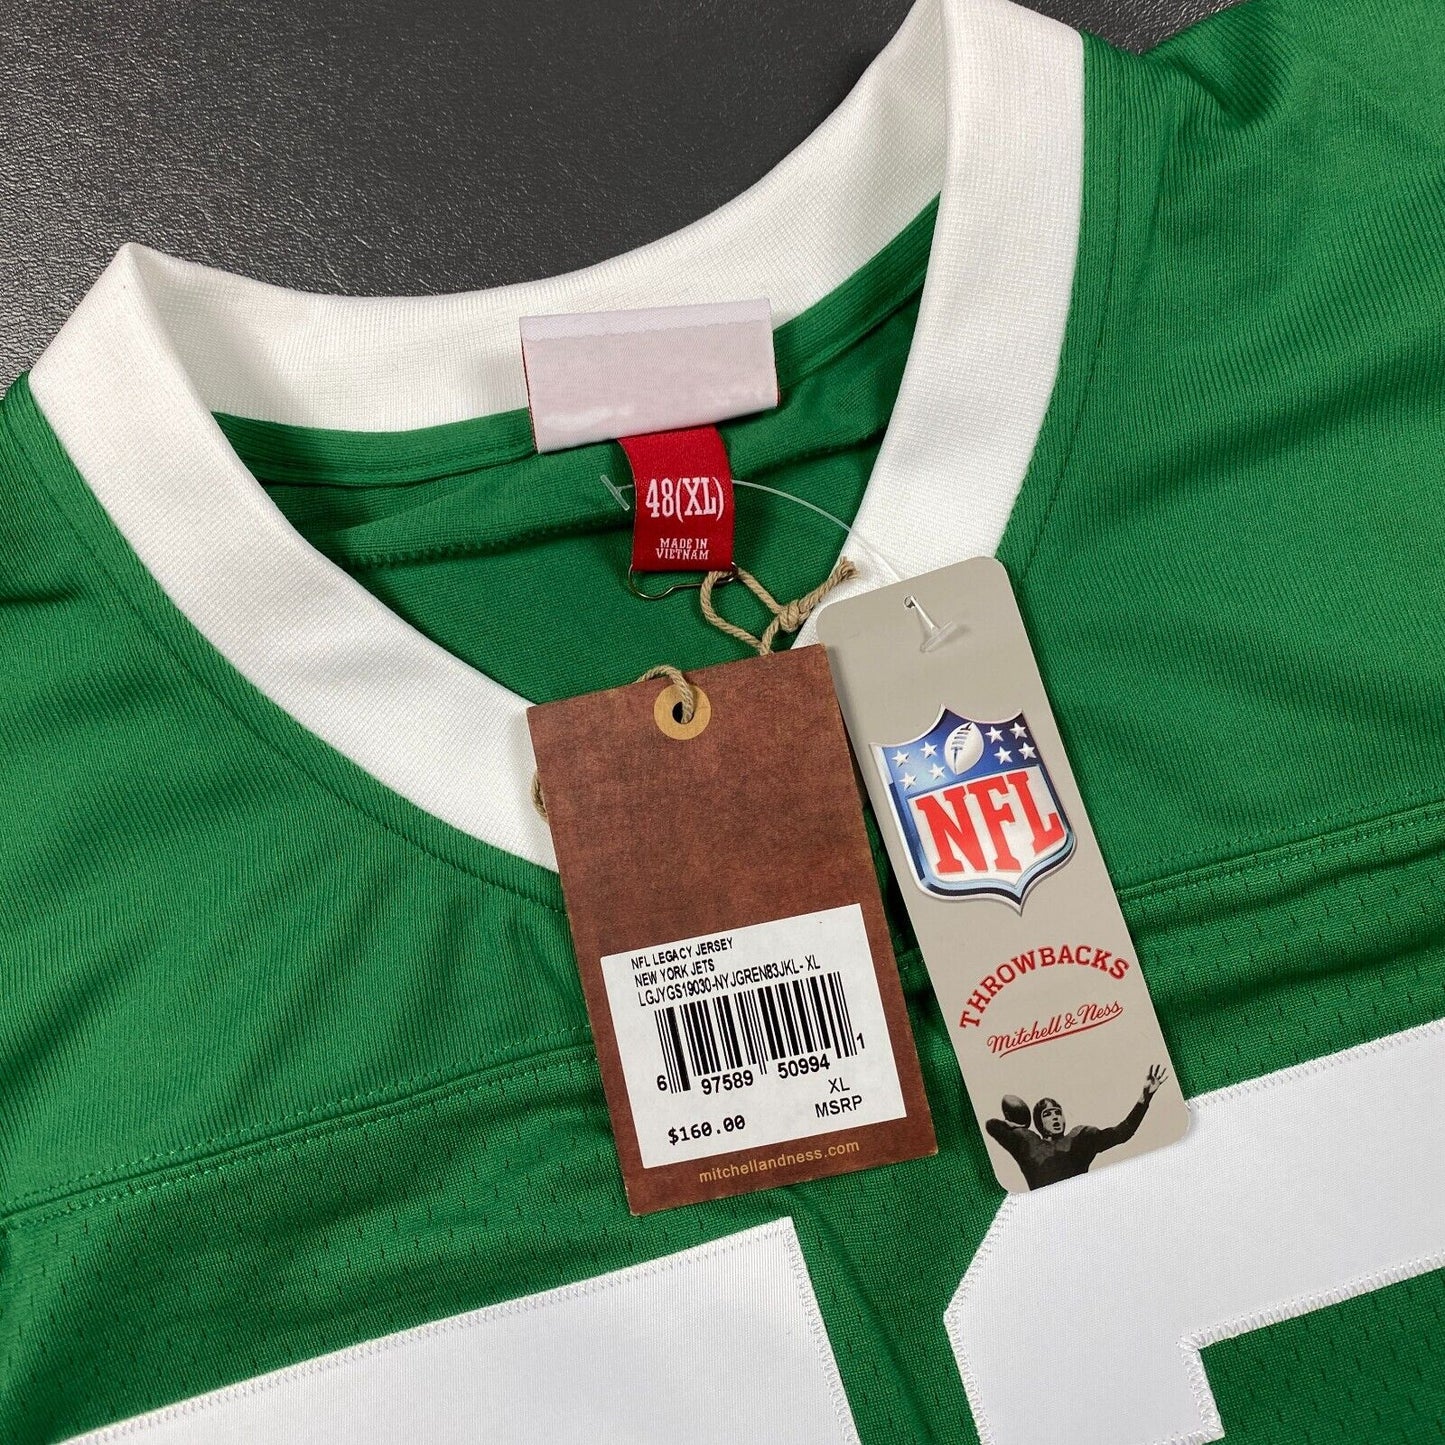 100% Authentic Joe Klecko Mitchell & Ness 1983 NY Jets Legacy Jersey Size 48 XL